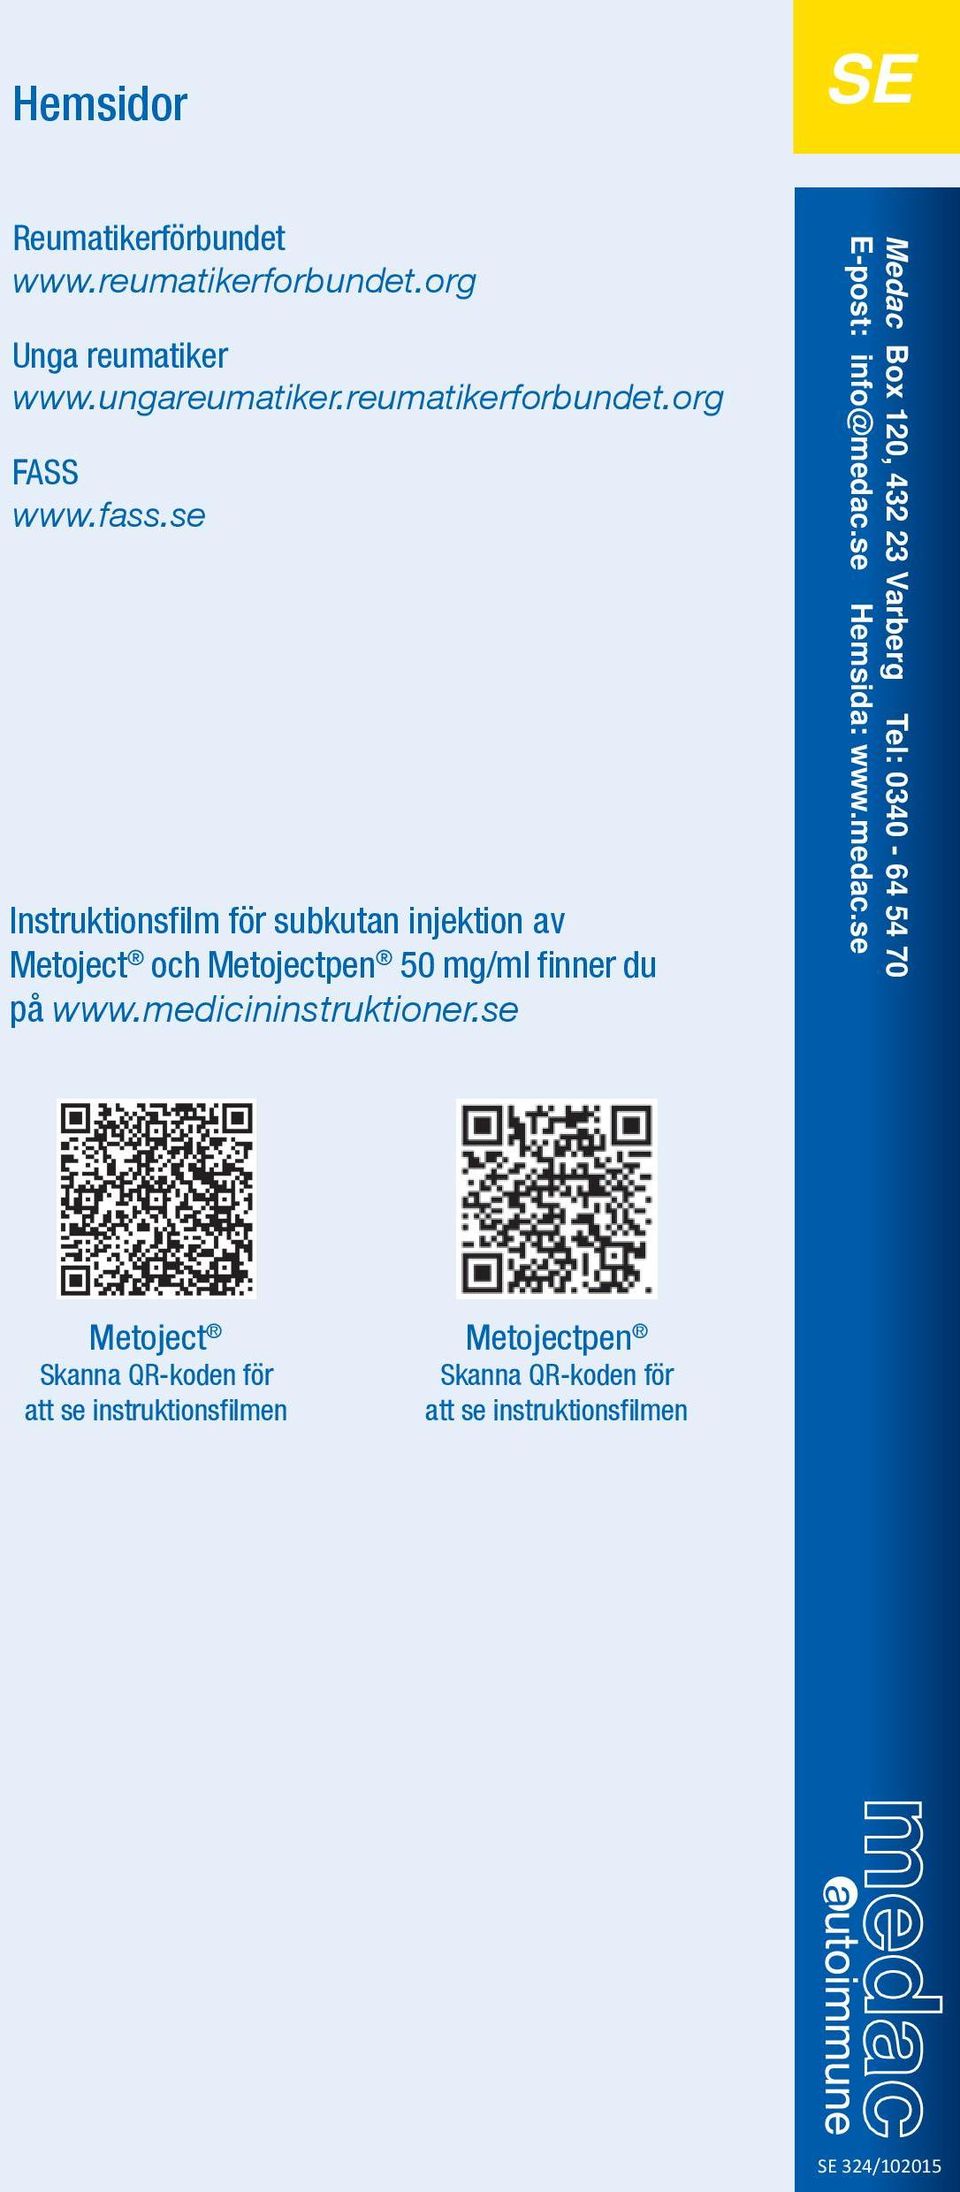 medicininstruktioner.se Medac Box 120, 432 23 Varberg Tel: 0340-64 54 70 E-post: info@medac.